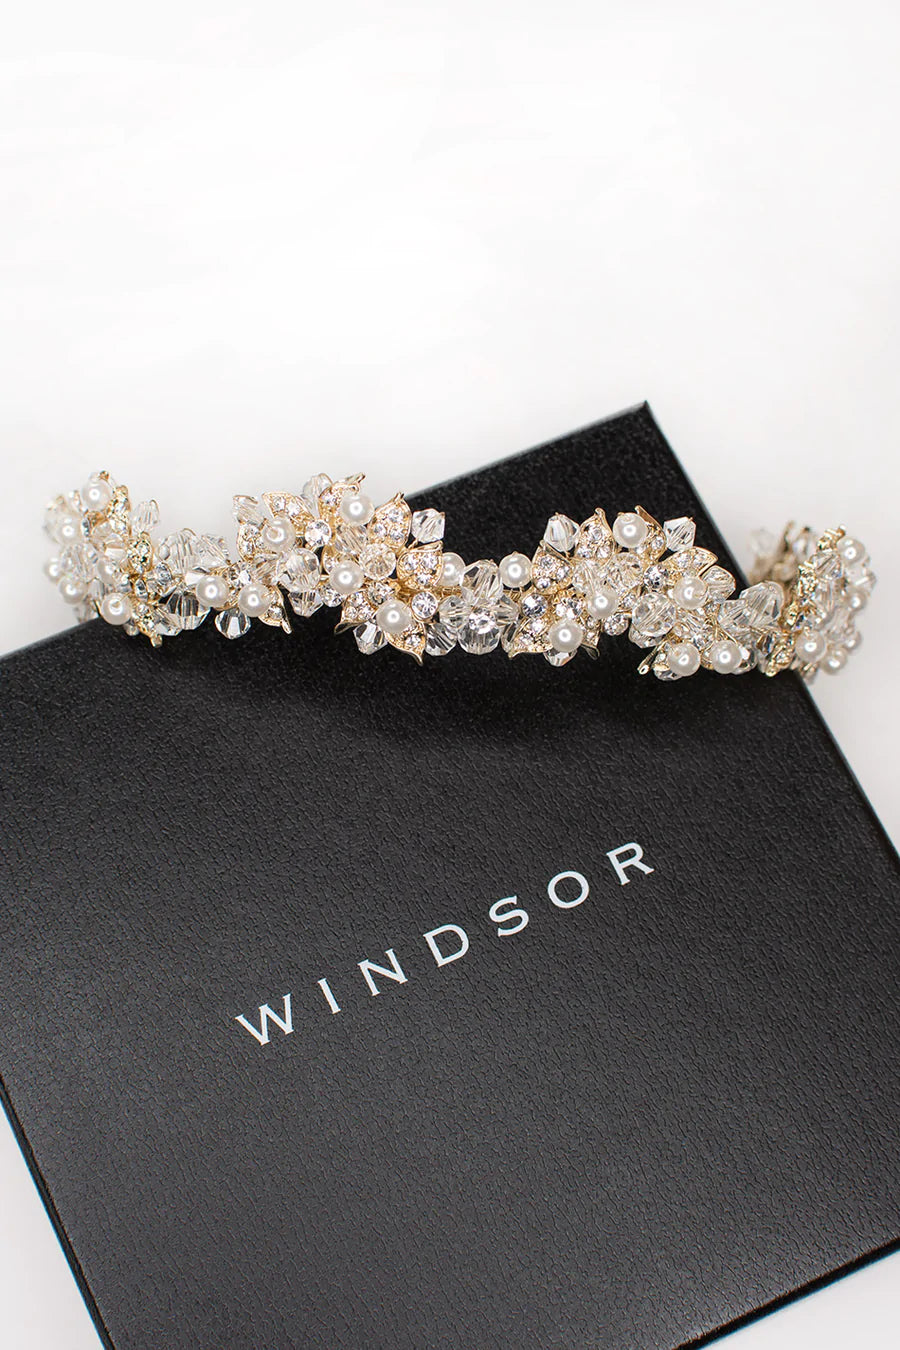 Isabelle Pearl - Modern Pearl & Crystal Bridal Crown